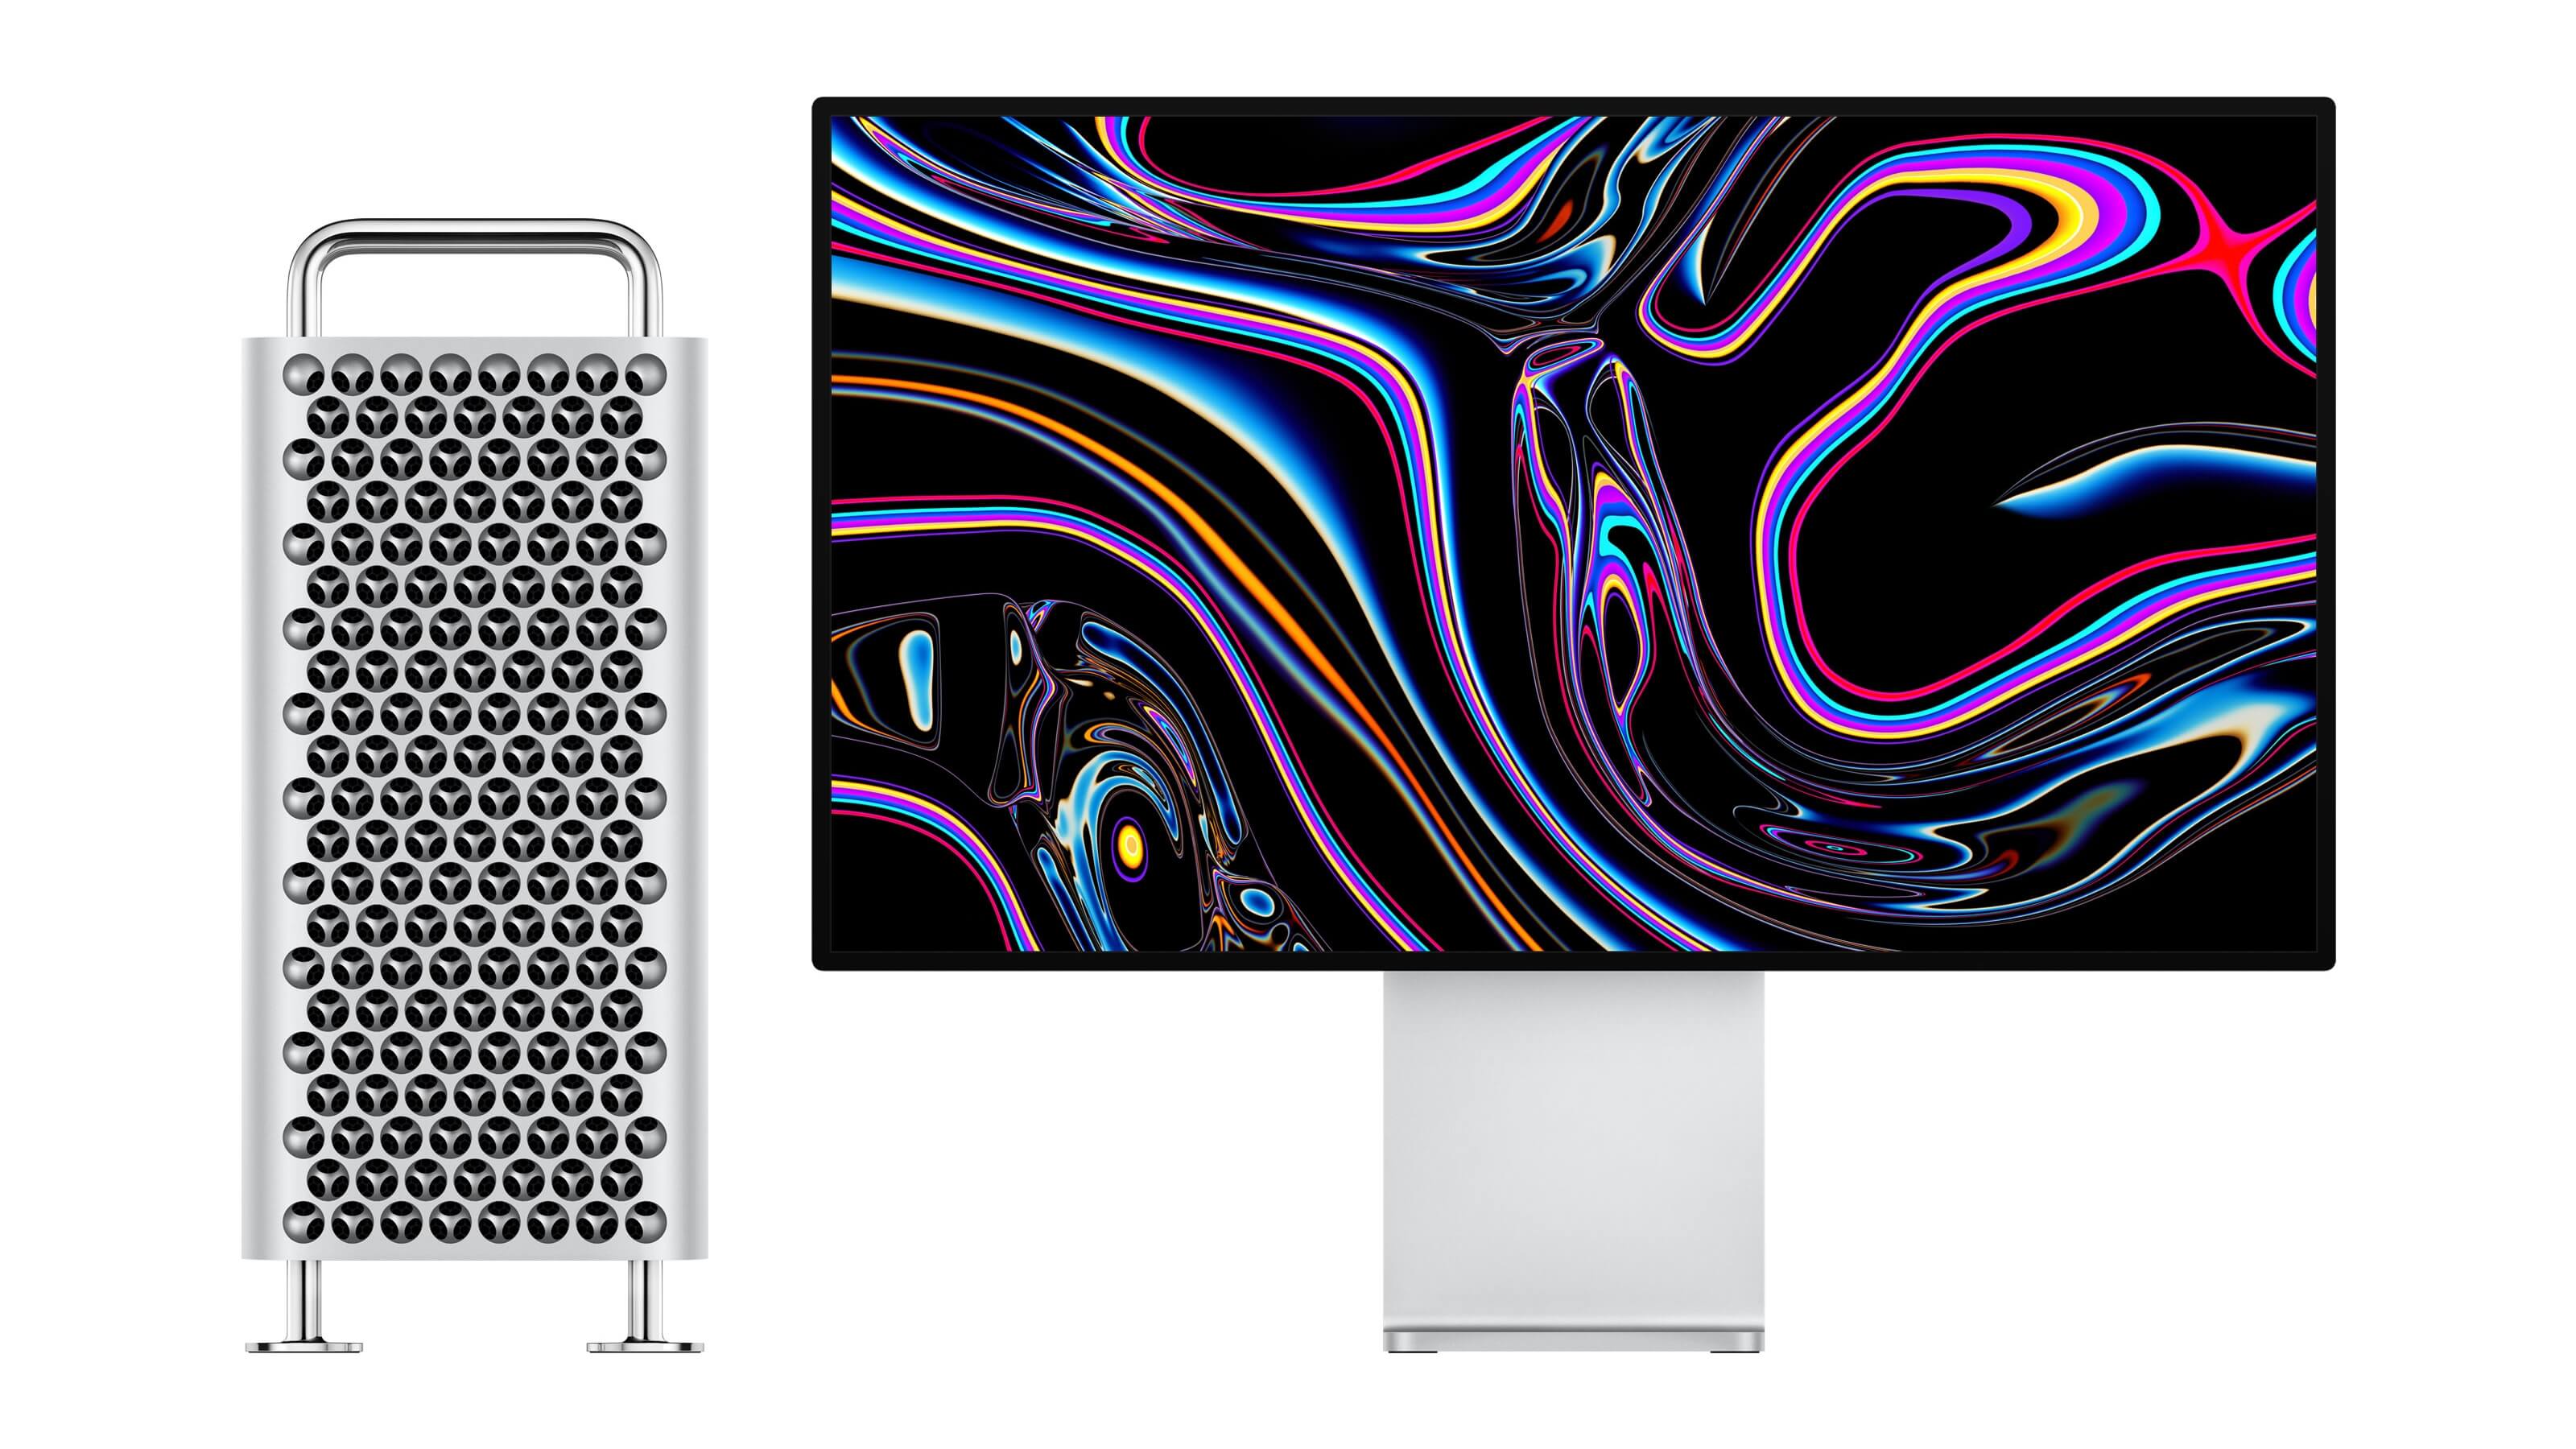 WWDC 2019: Apple показала Mac Pro за $6000 и монитор Pro Display XDR за $5000